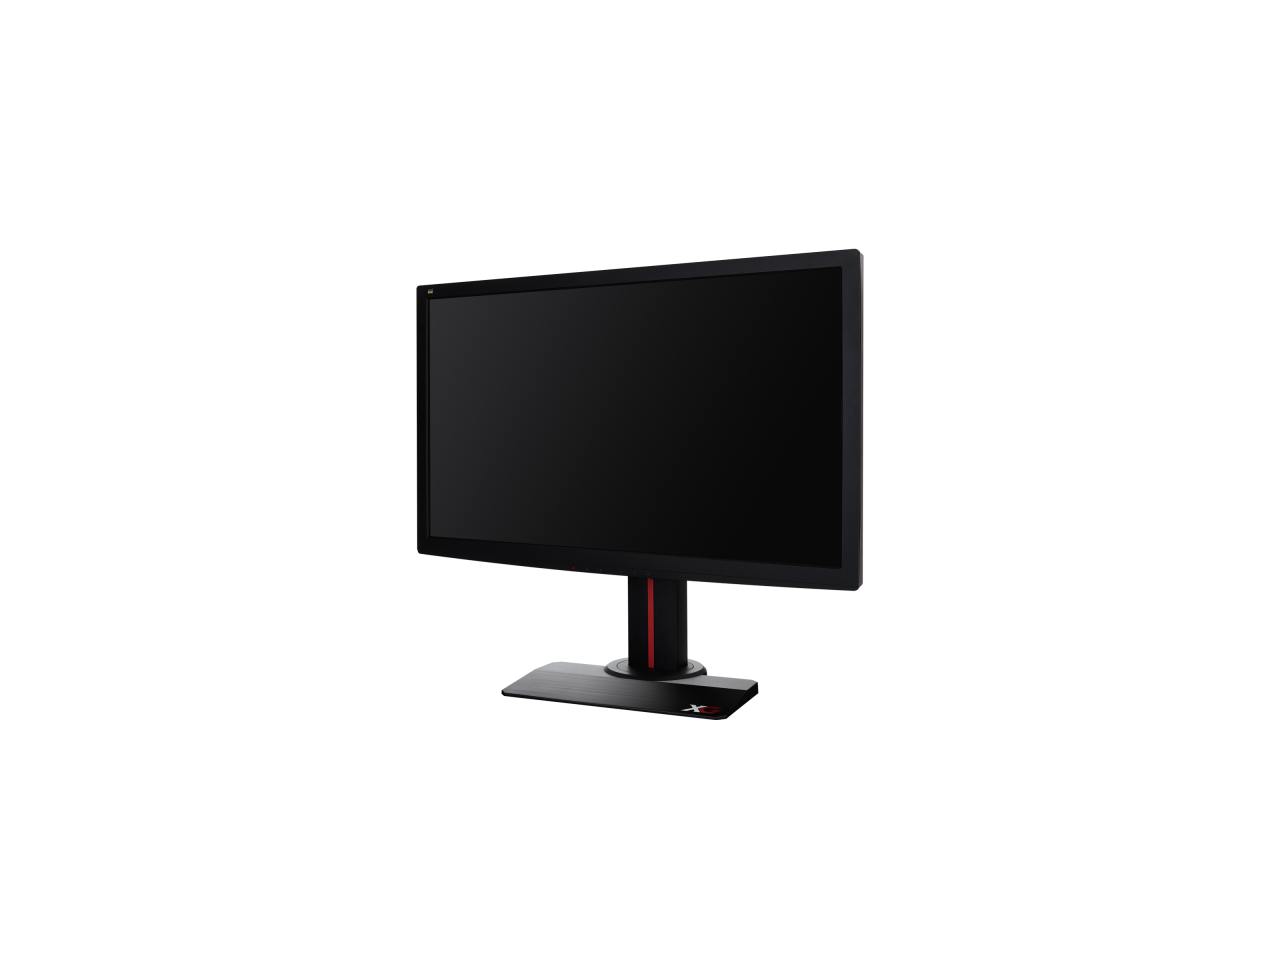 ViewSonic XG2702 27" Full HD 1920 x 1080 144Hz 1ms (GTG) 2xHDMI DisplayPort AMD Freesync USB 3.0 Hub Anti-Glare Backlit LED Gaming Monitor